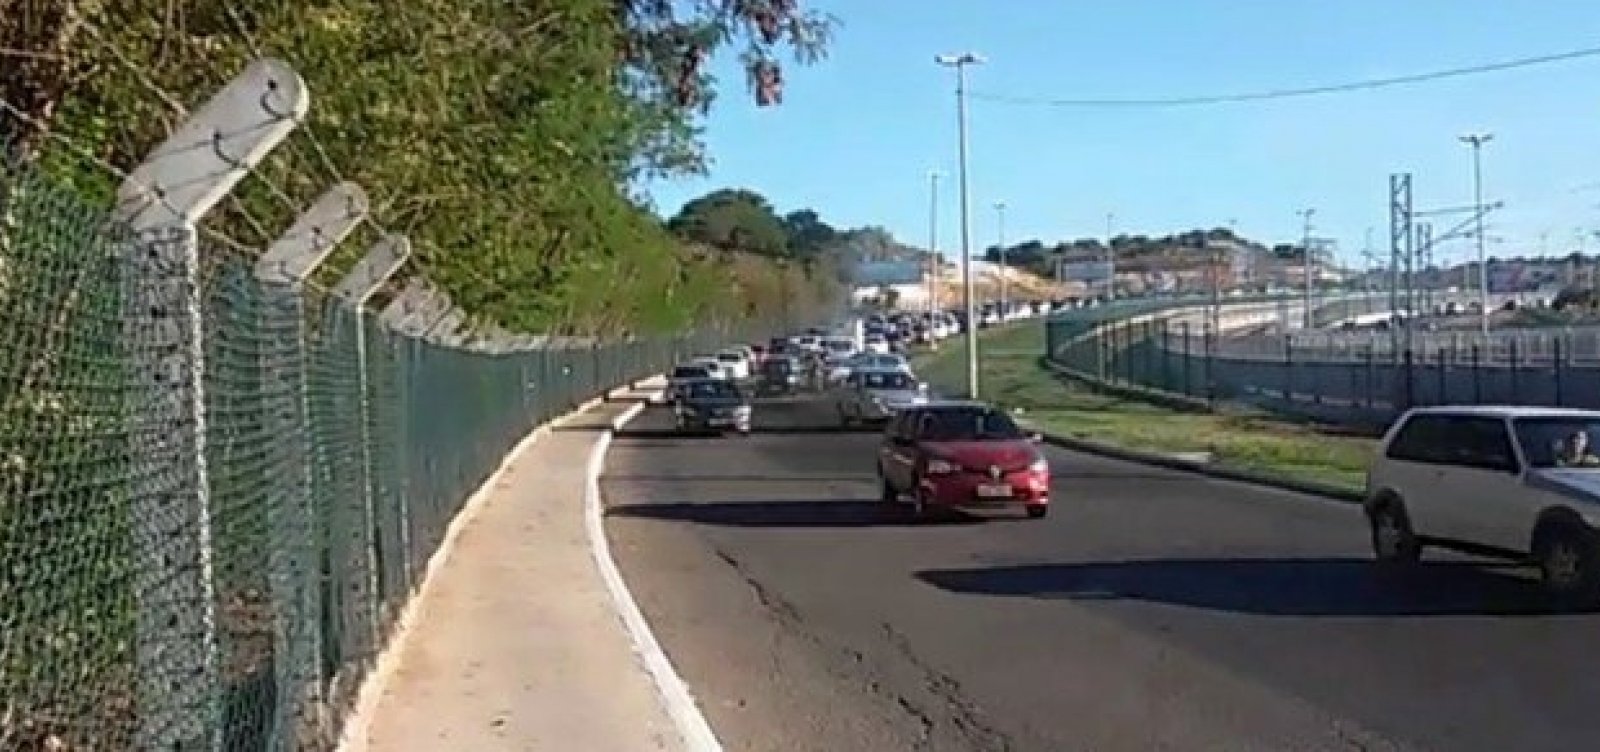 Avenida Carybé será interditada para implantação de nova passarela 